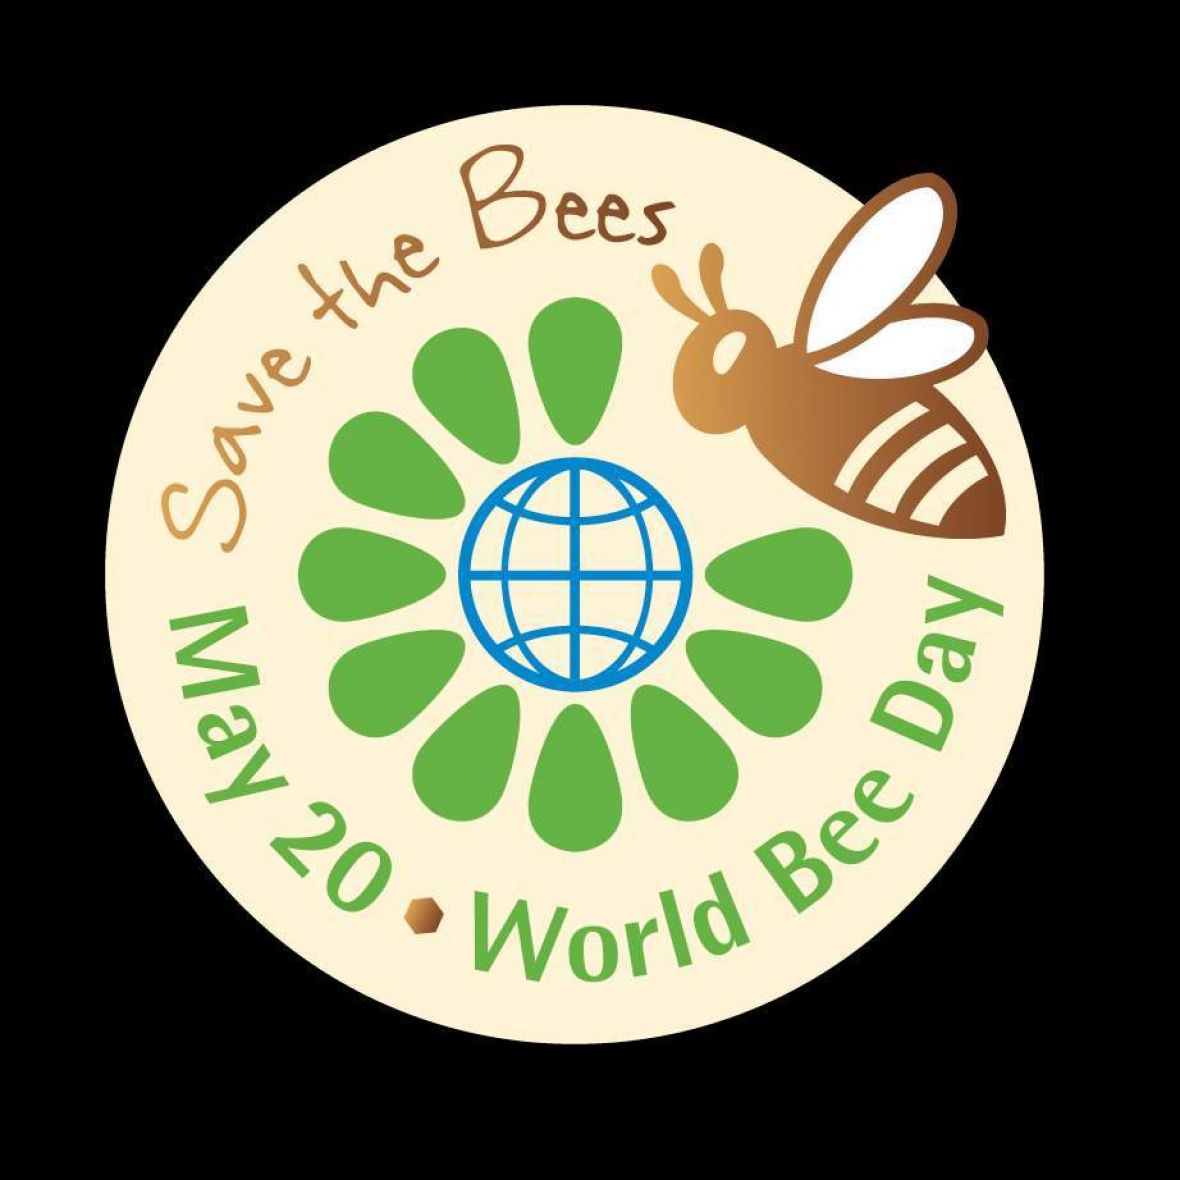 Svjetski dan pčela - undefined